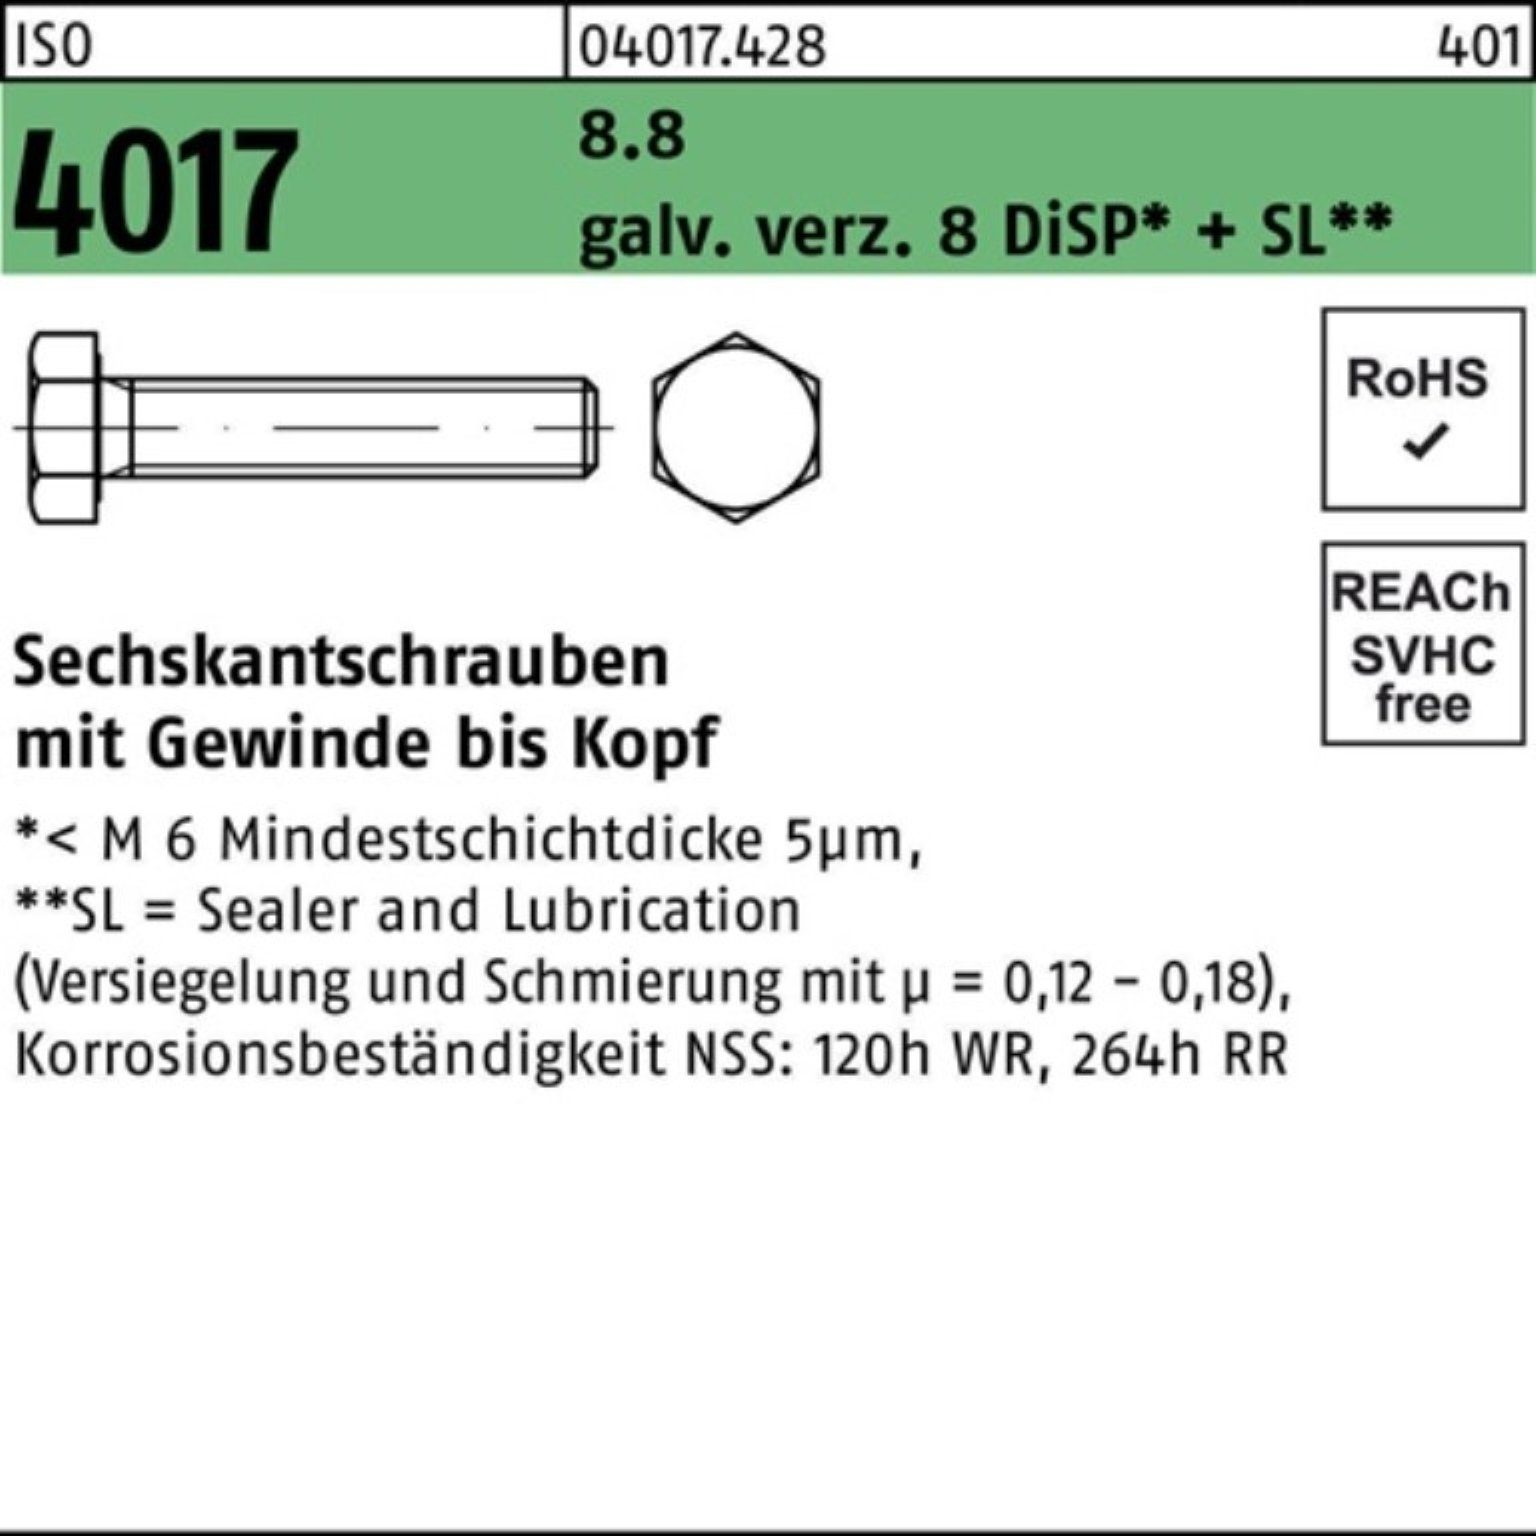 8.8 galv.verz. VG ISO Sechskantschraube 100er 4017 Sechskantschraube M8x DiSP+ Pack Bufab 90 8